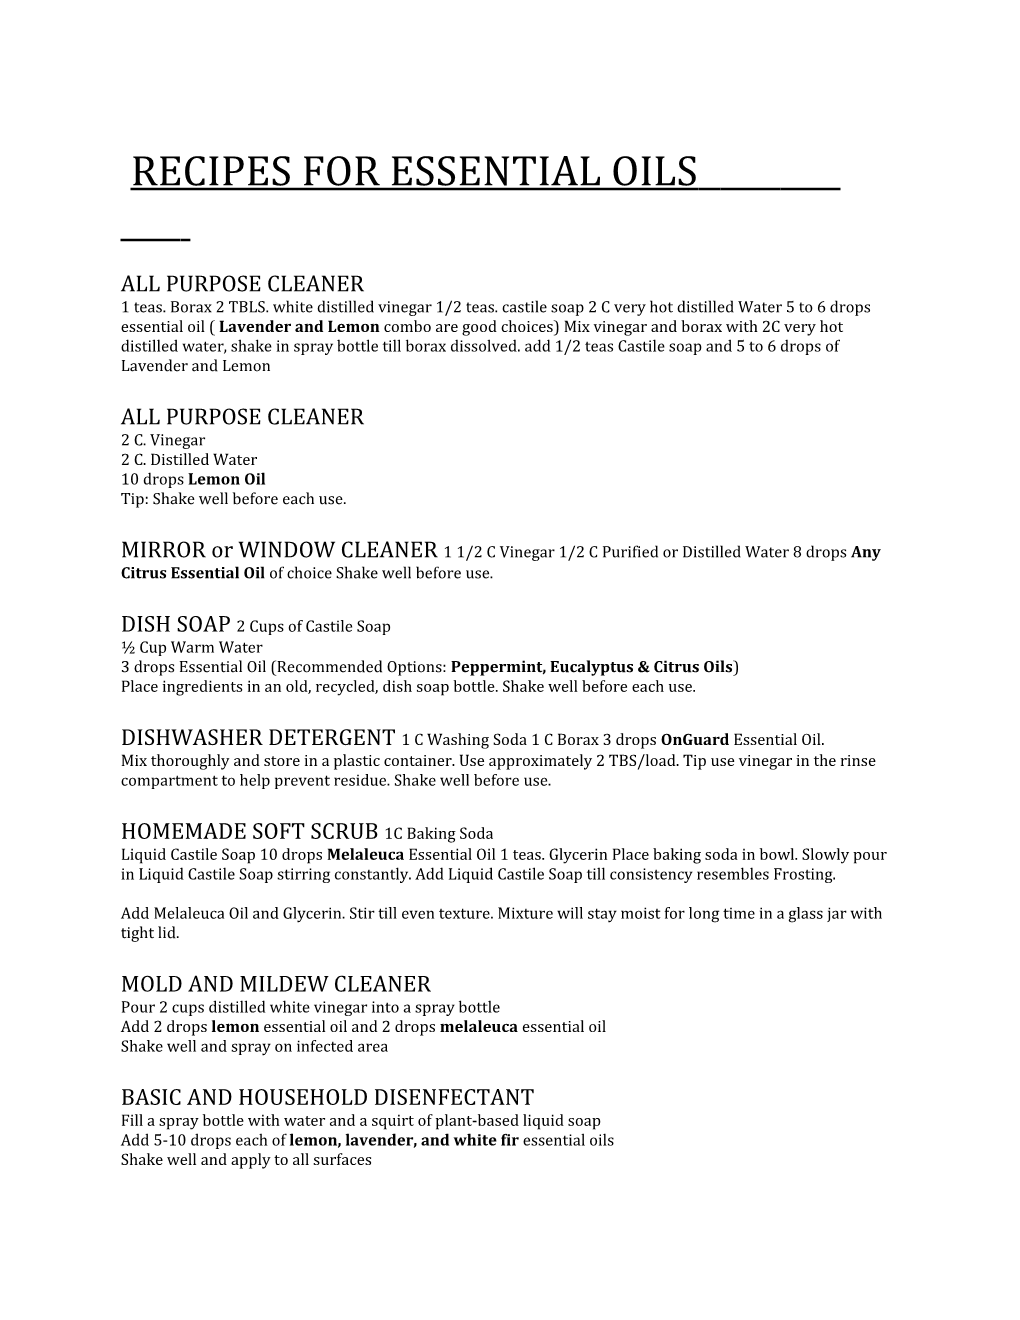 Recipes for Essential Oils